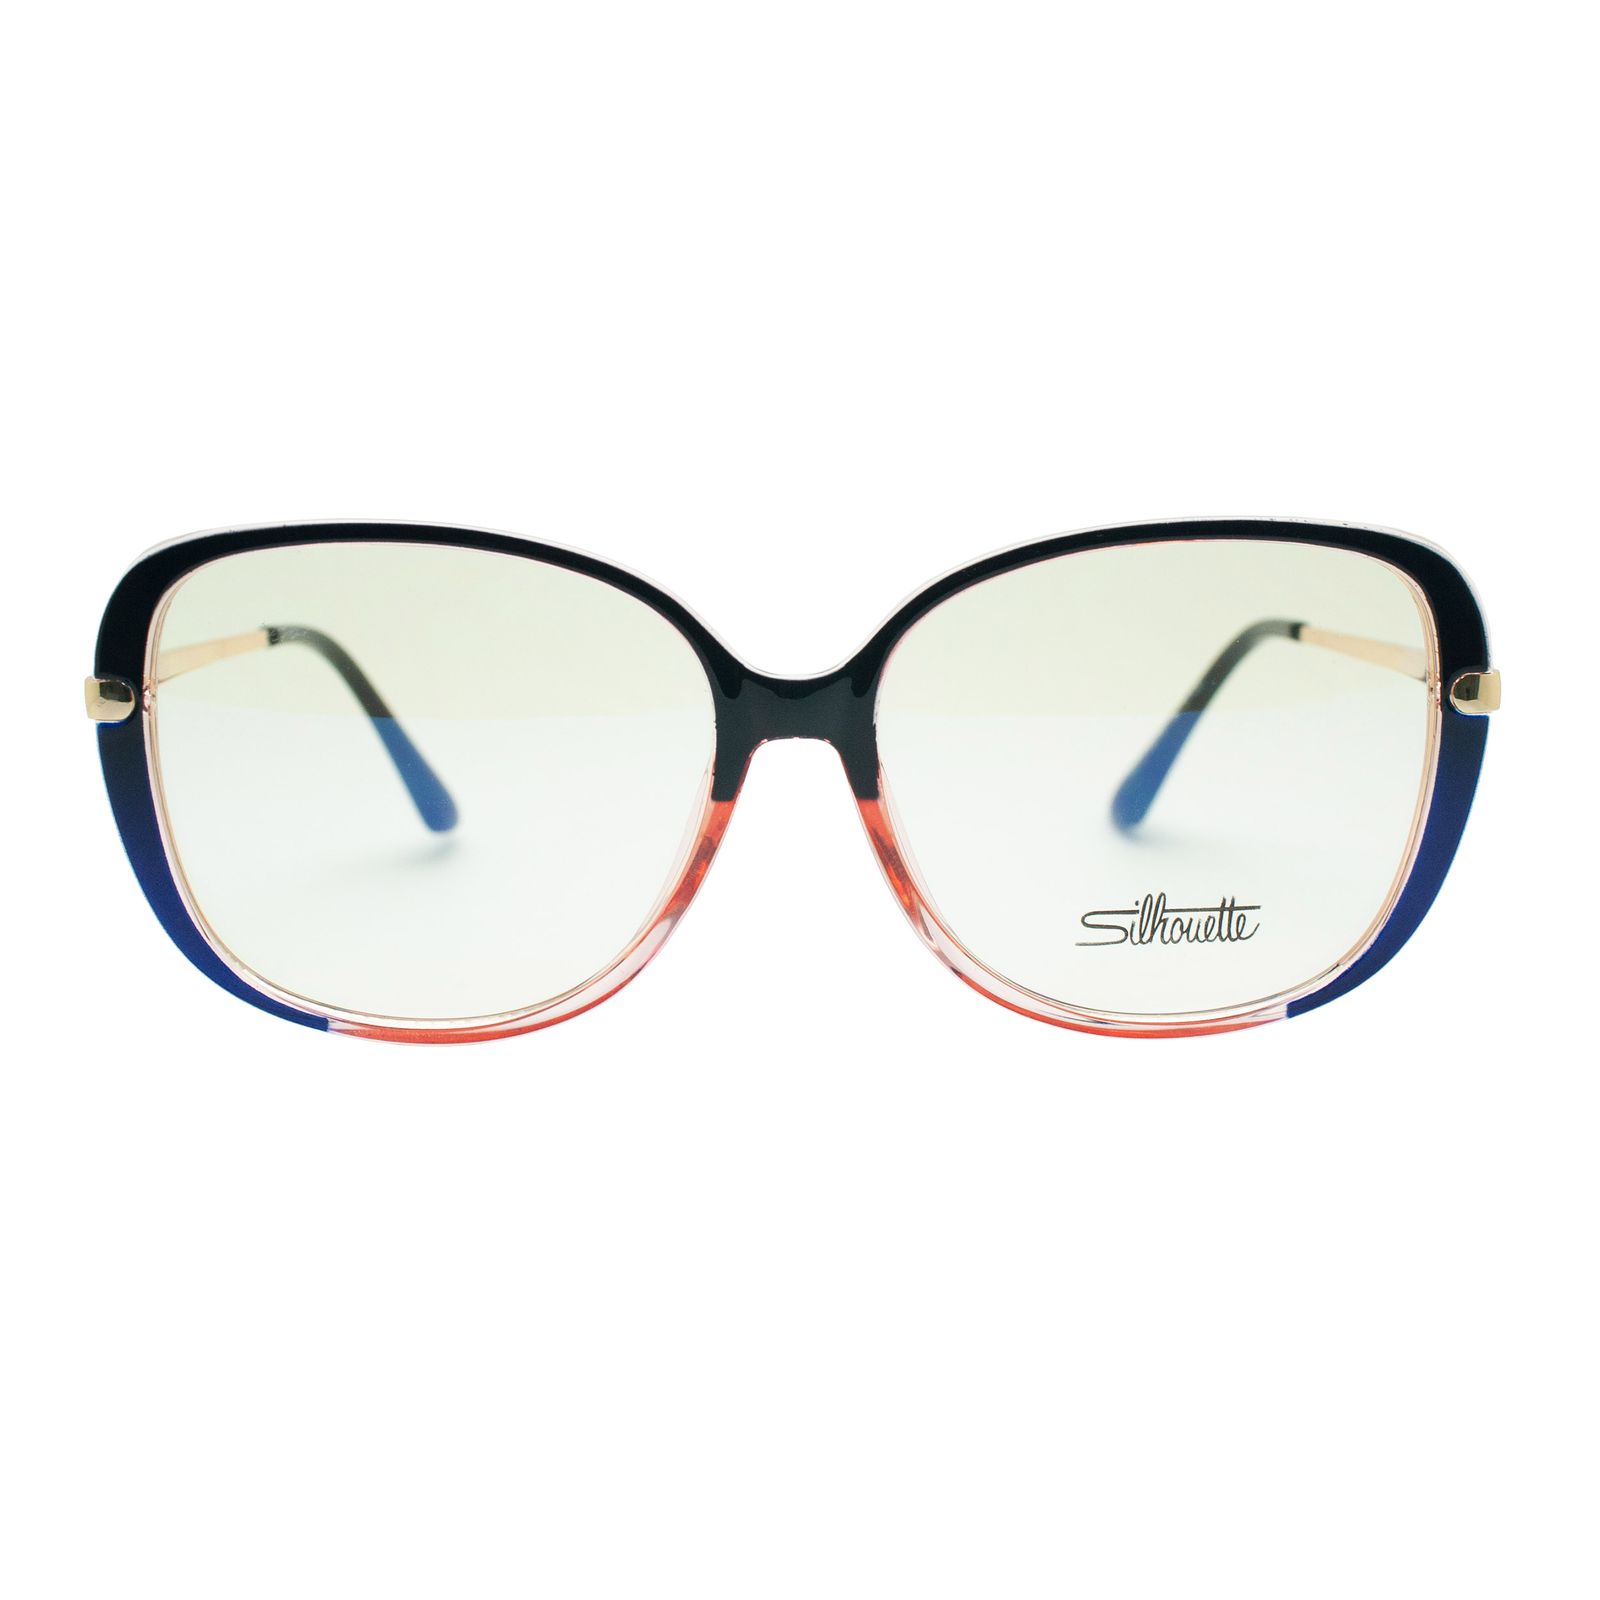 فریم عینک طبی سیلوئت مدل 93312 C1 G -  - 3